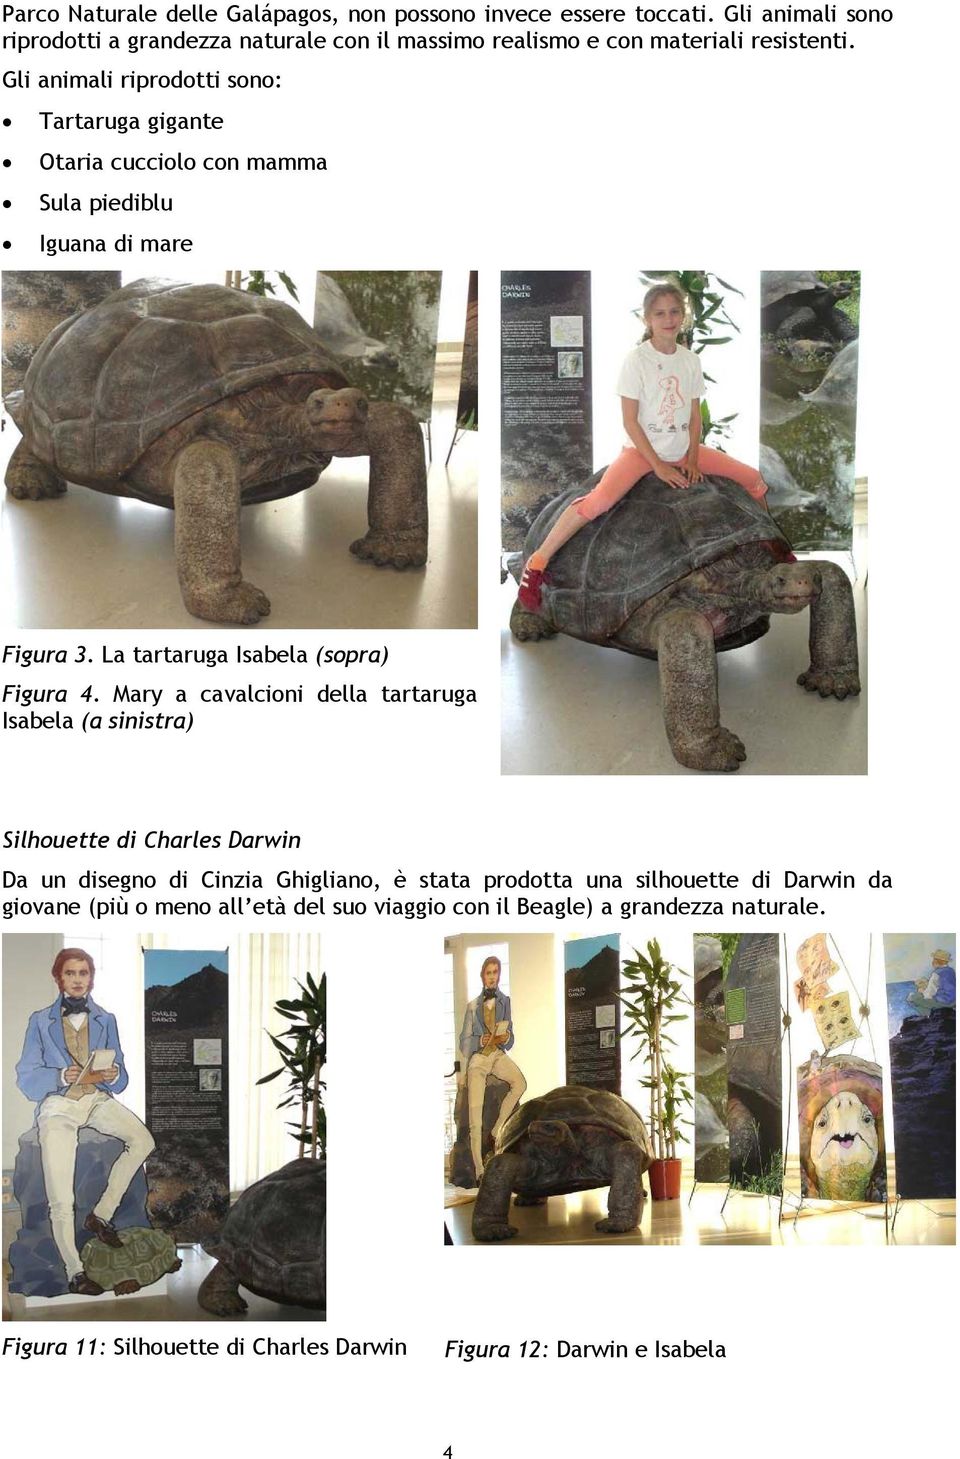 Gli animali riprodotti sono: Tartaruga gigante Otaria cucciolo con mamma Sula piediblu Iguana di mare Figura 3. La tartaruga Isabela (sopra) Figura 4.